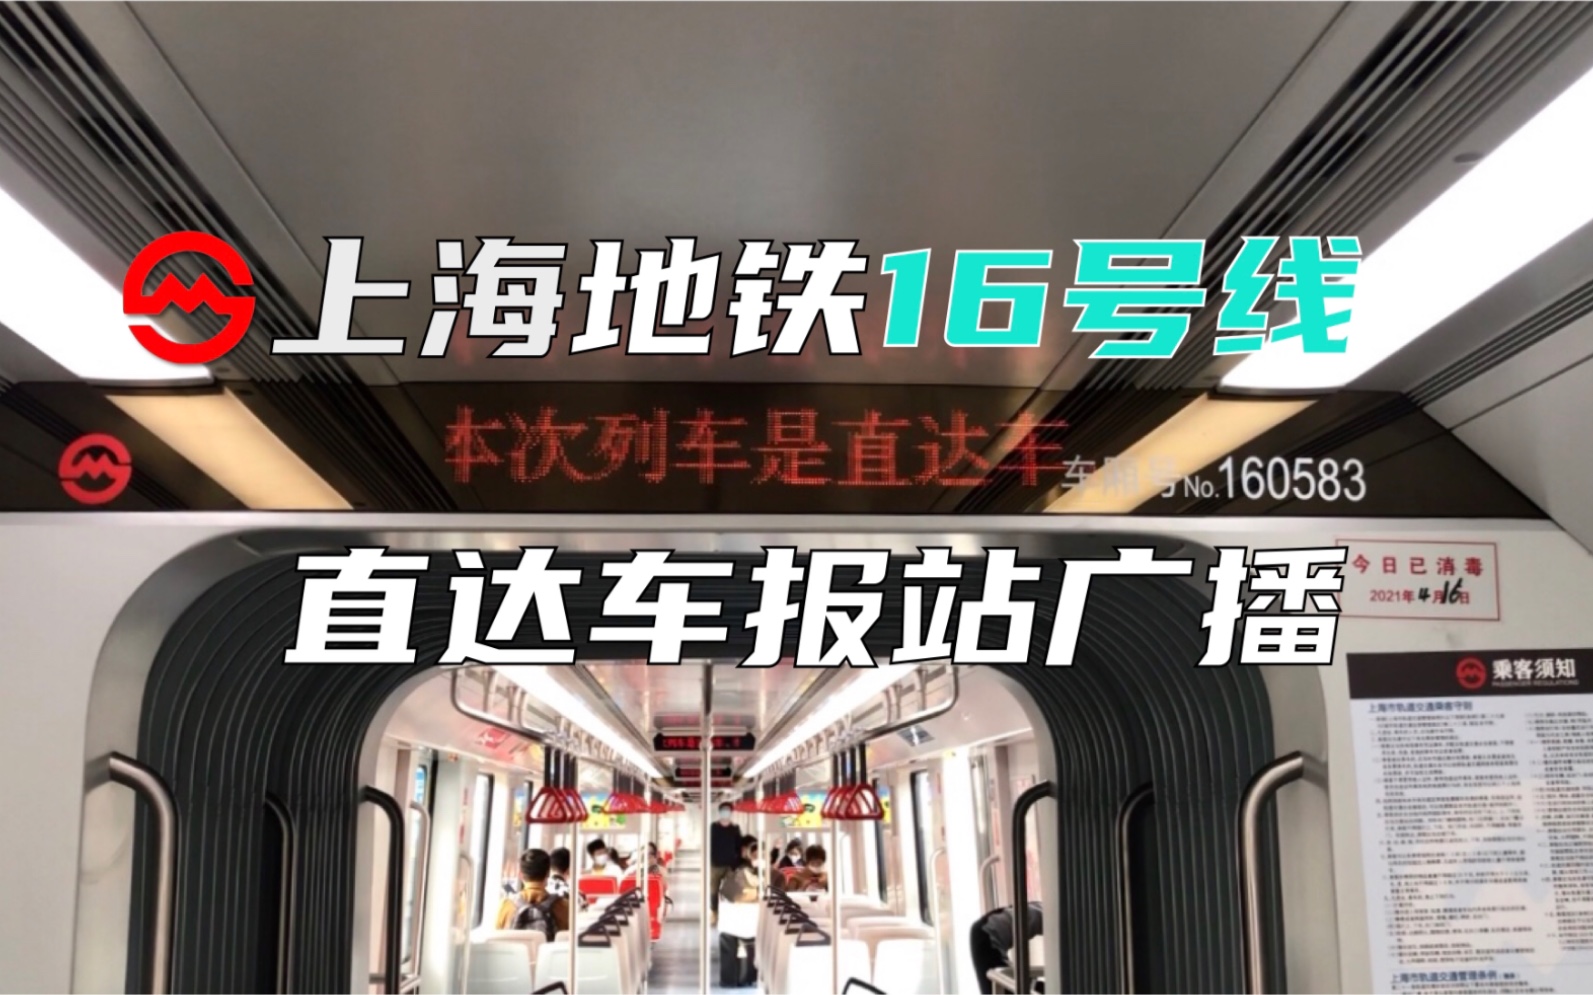 上海16号线标志图片